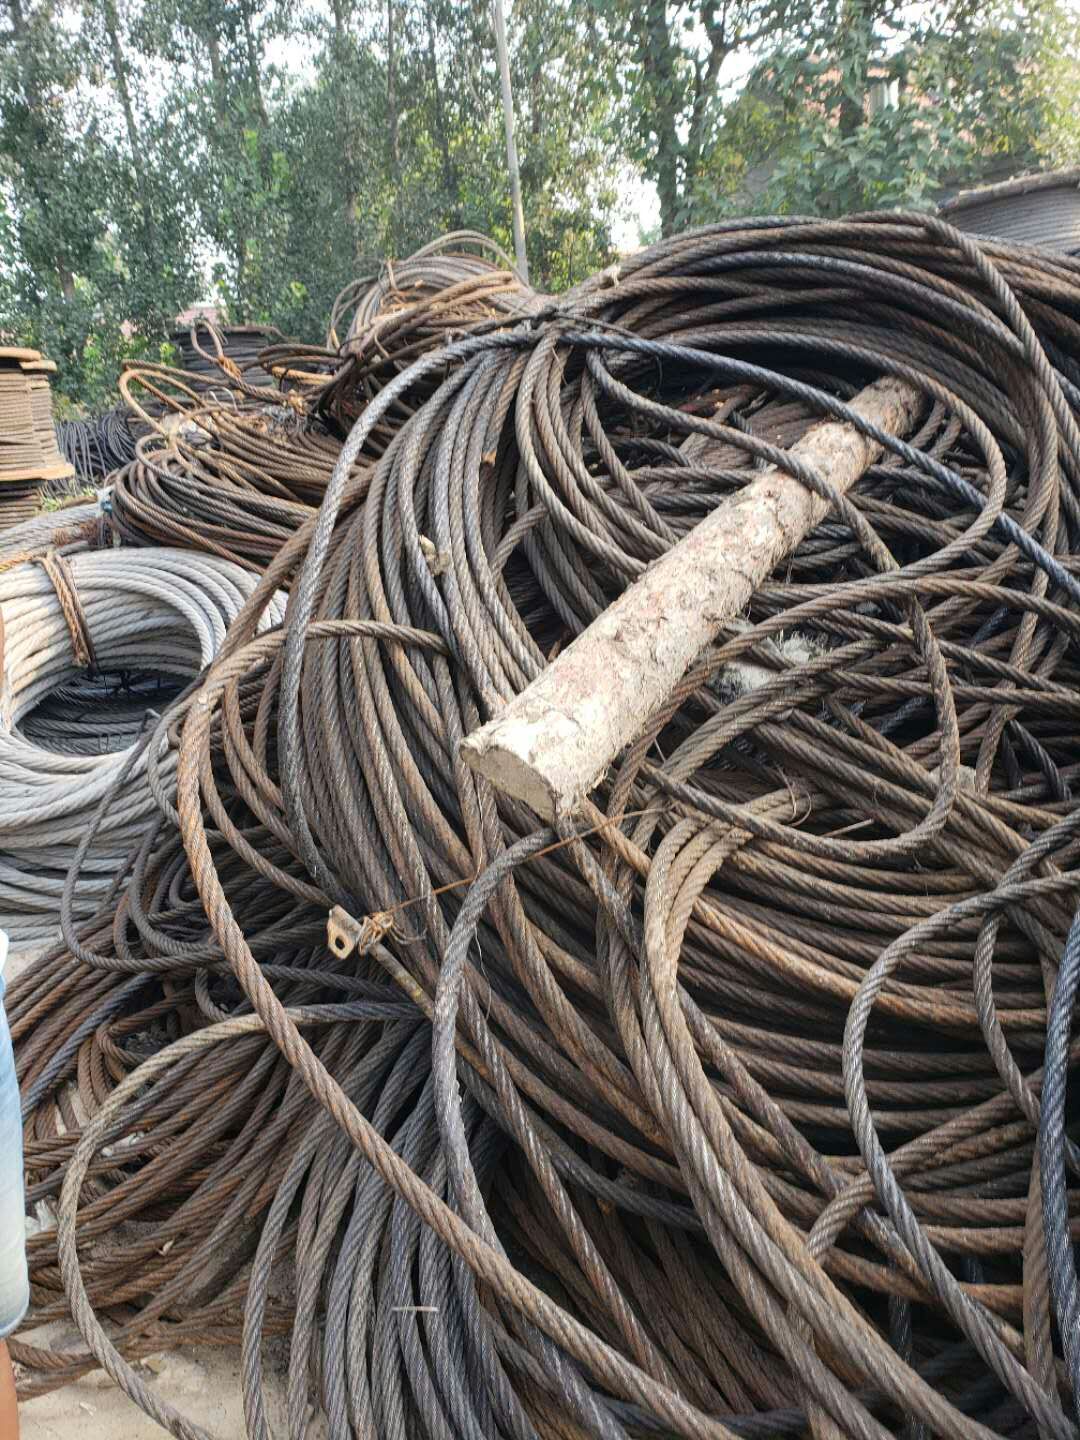 回收废旧钢丝绳